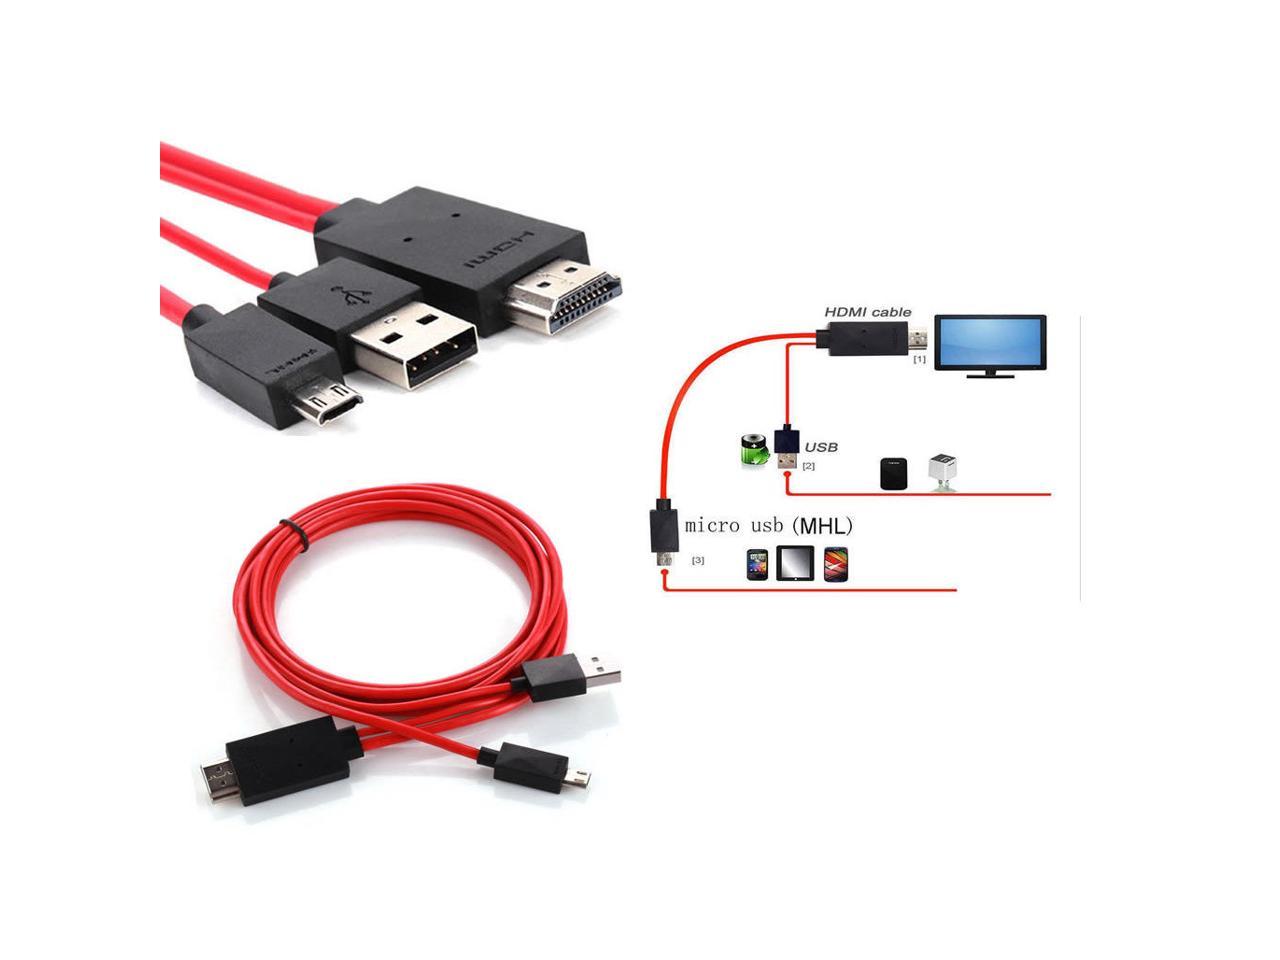 Соединение через usb. Кабель переходник адаптер HDMI Micro USB. Кабель ХДМИ юсб. Micro USB 3.0 К HDMI MHL адаптер. Кабель USB-HDMI (подключить смартфон к телевизору).